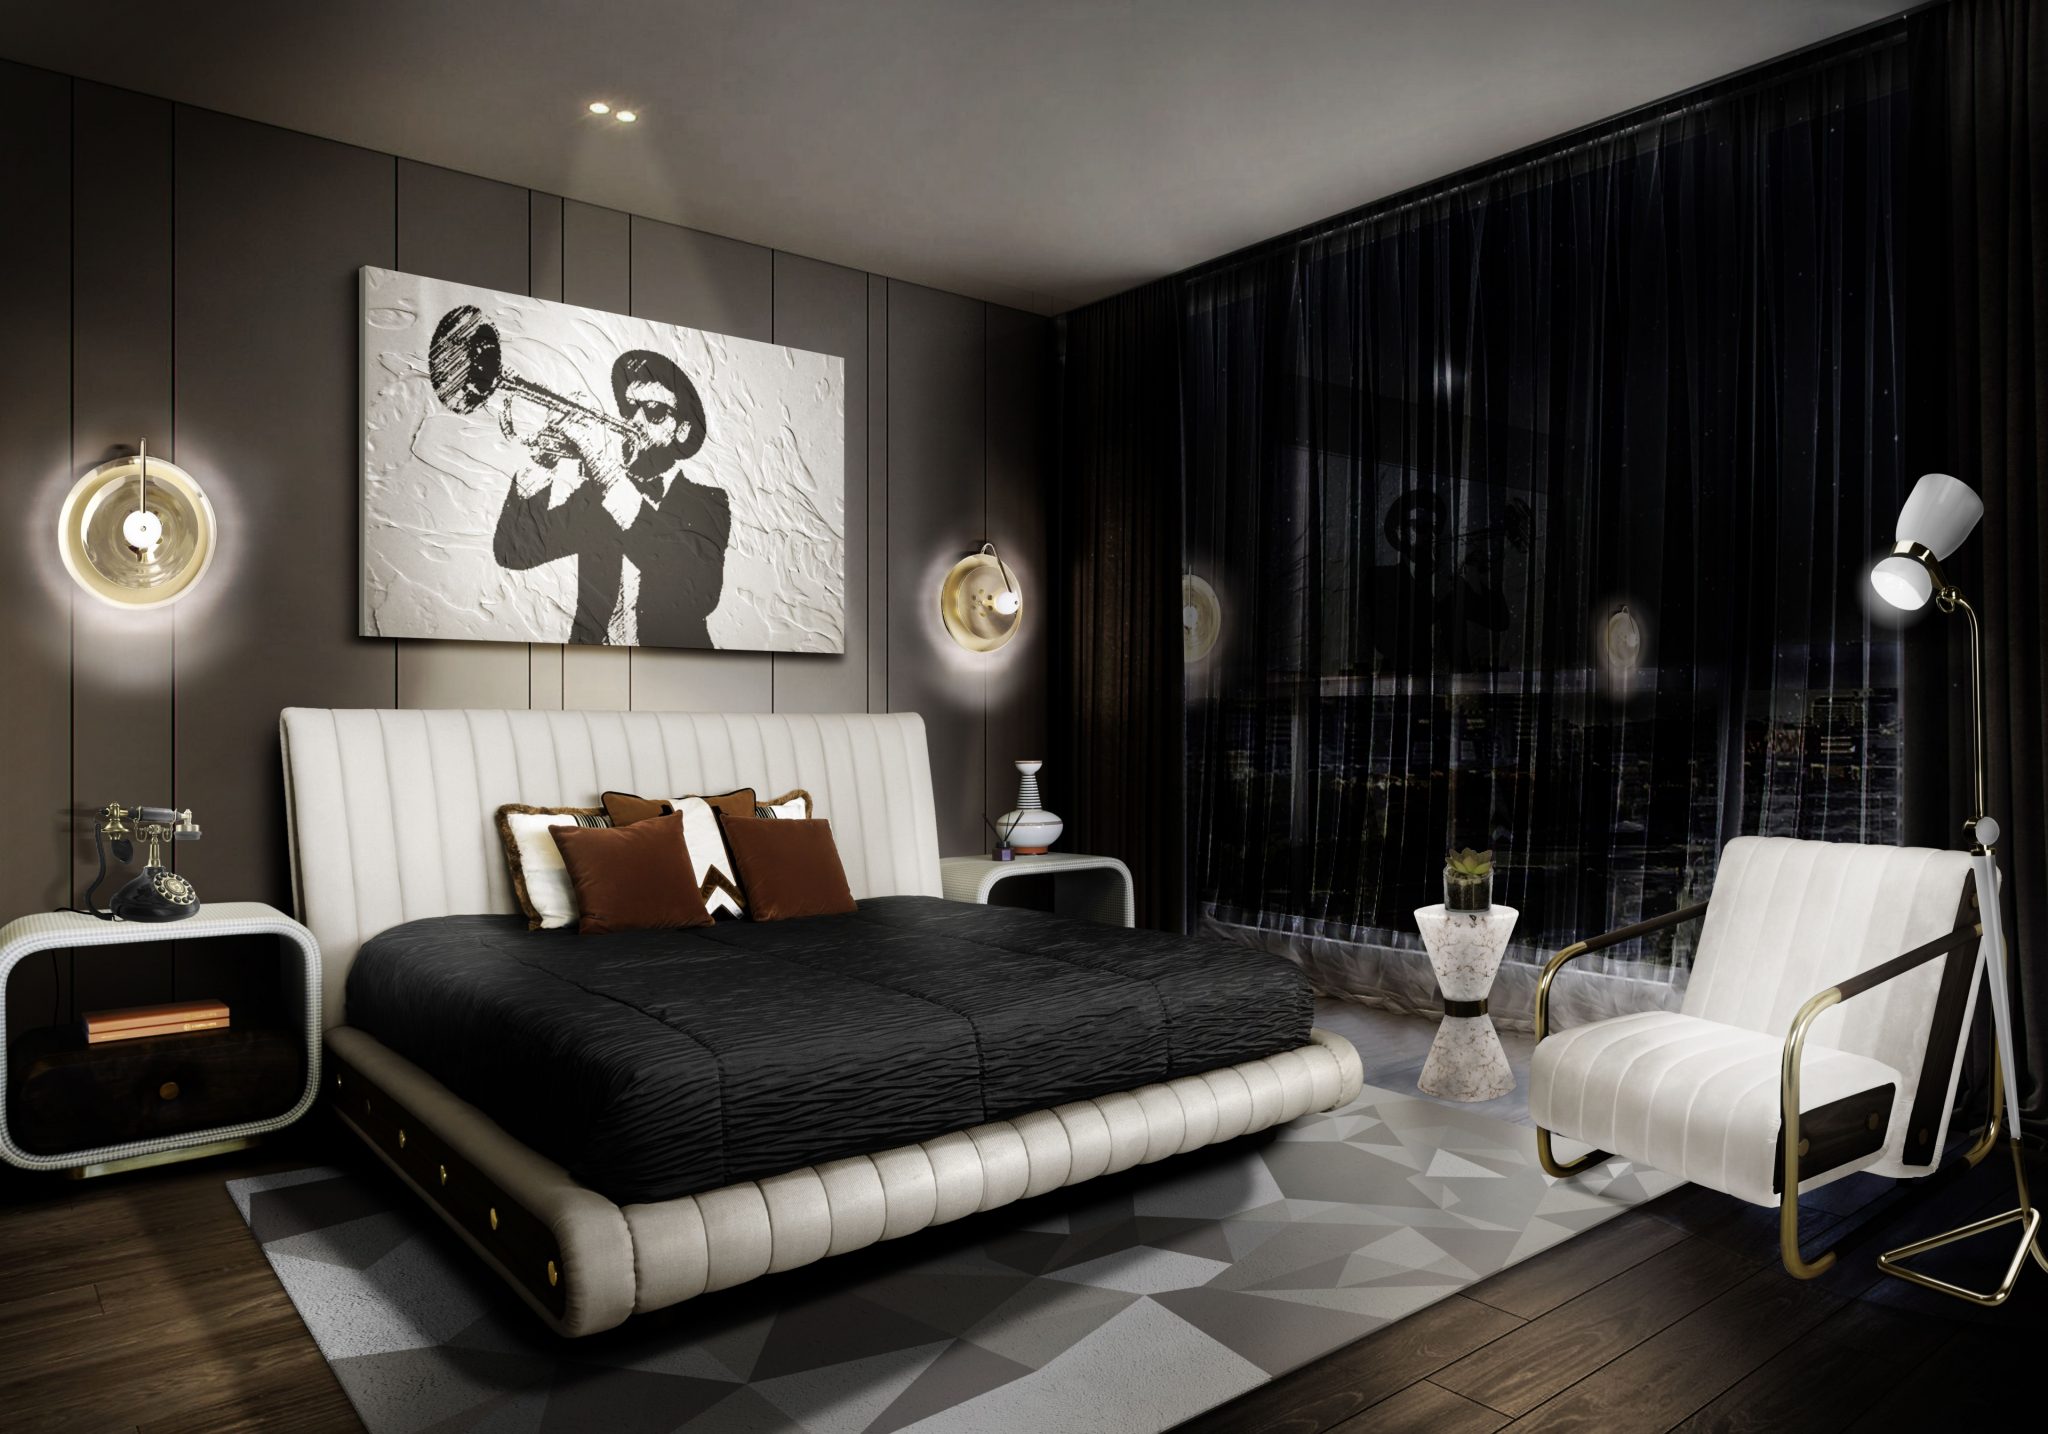 LUXURY BLACK BEDROOM DESIGN – Room by Room